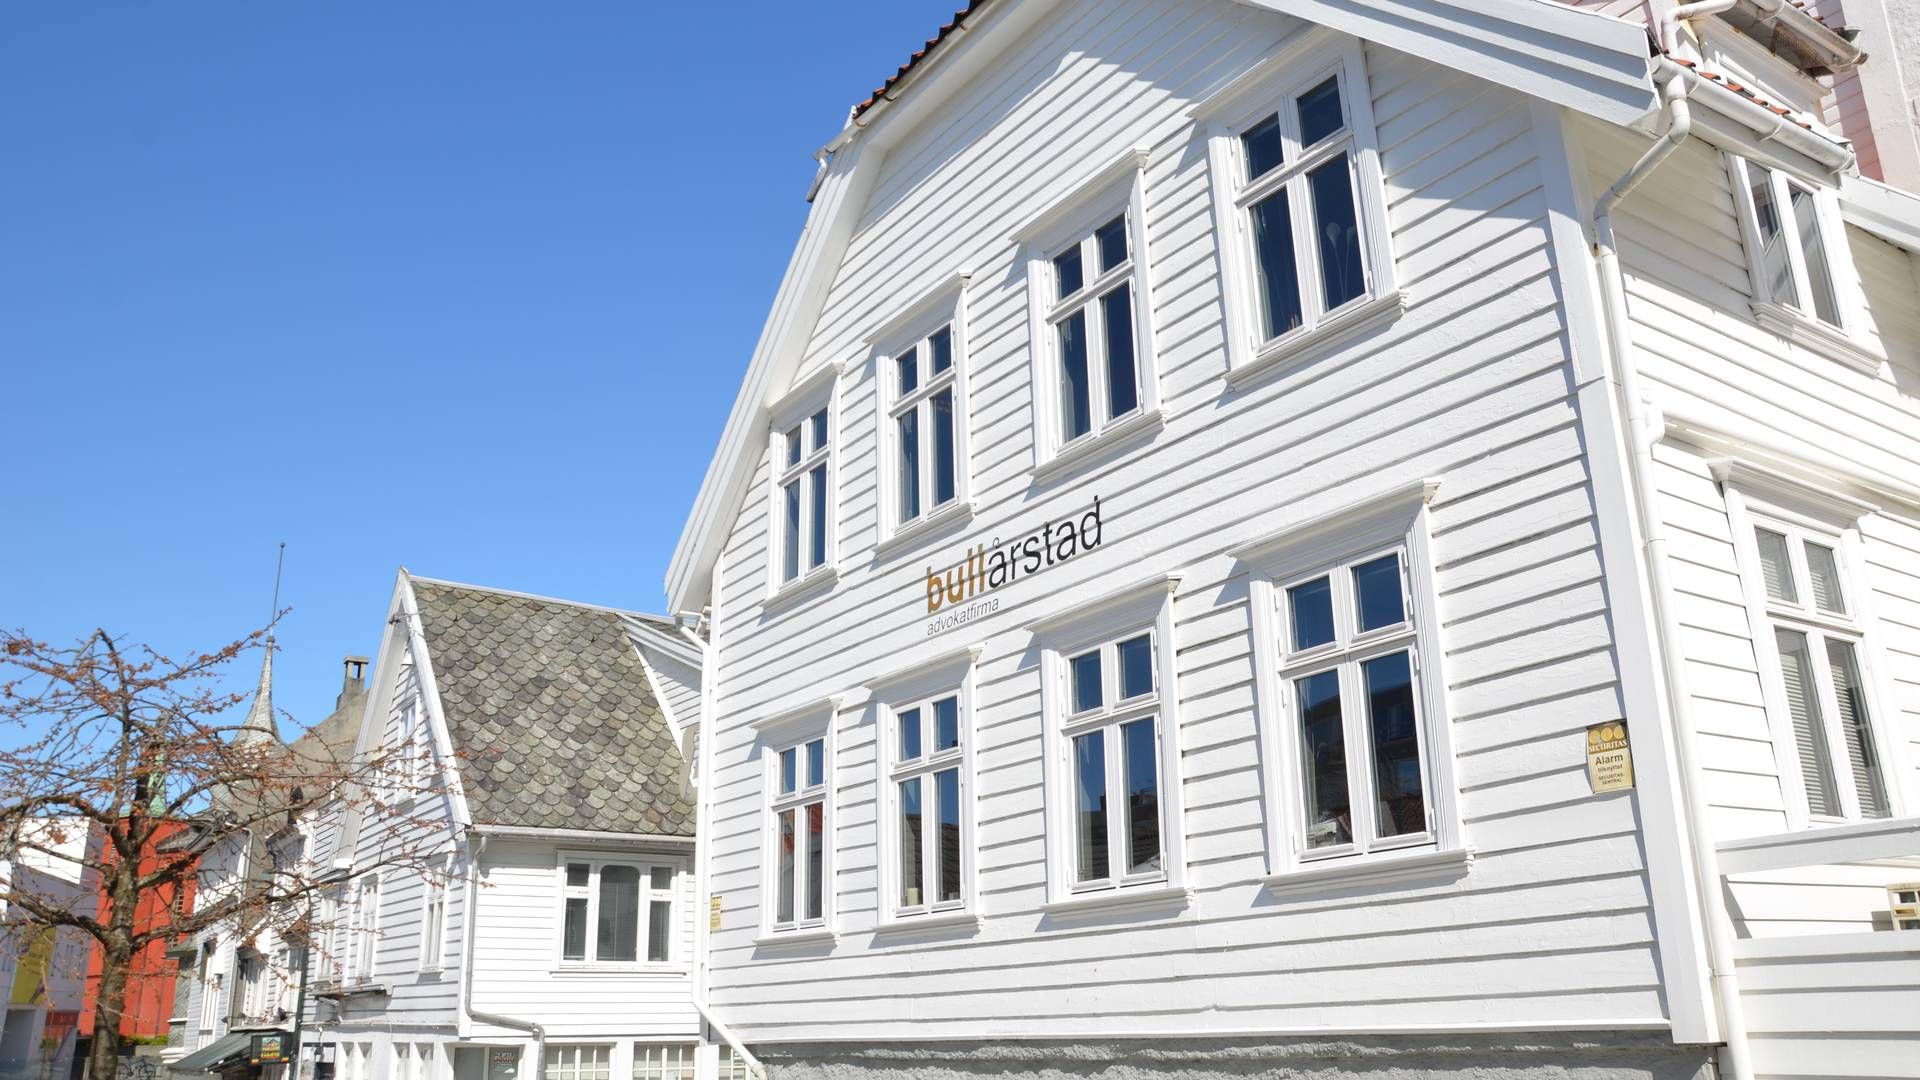 ADVOKATSKANDALEN: Bull Årstad, som er rammet av en advokatskandale, har kontorer både i Stavanger og Sandnes. | Foto: Aleksander Simonsen Losnegård / AdvokatWatch